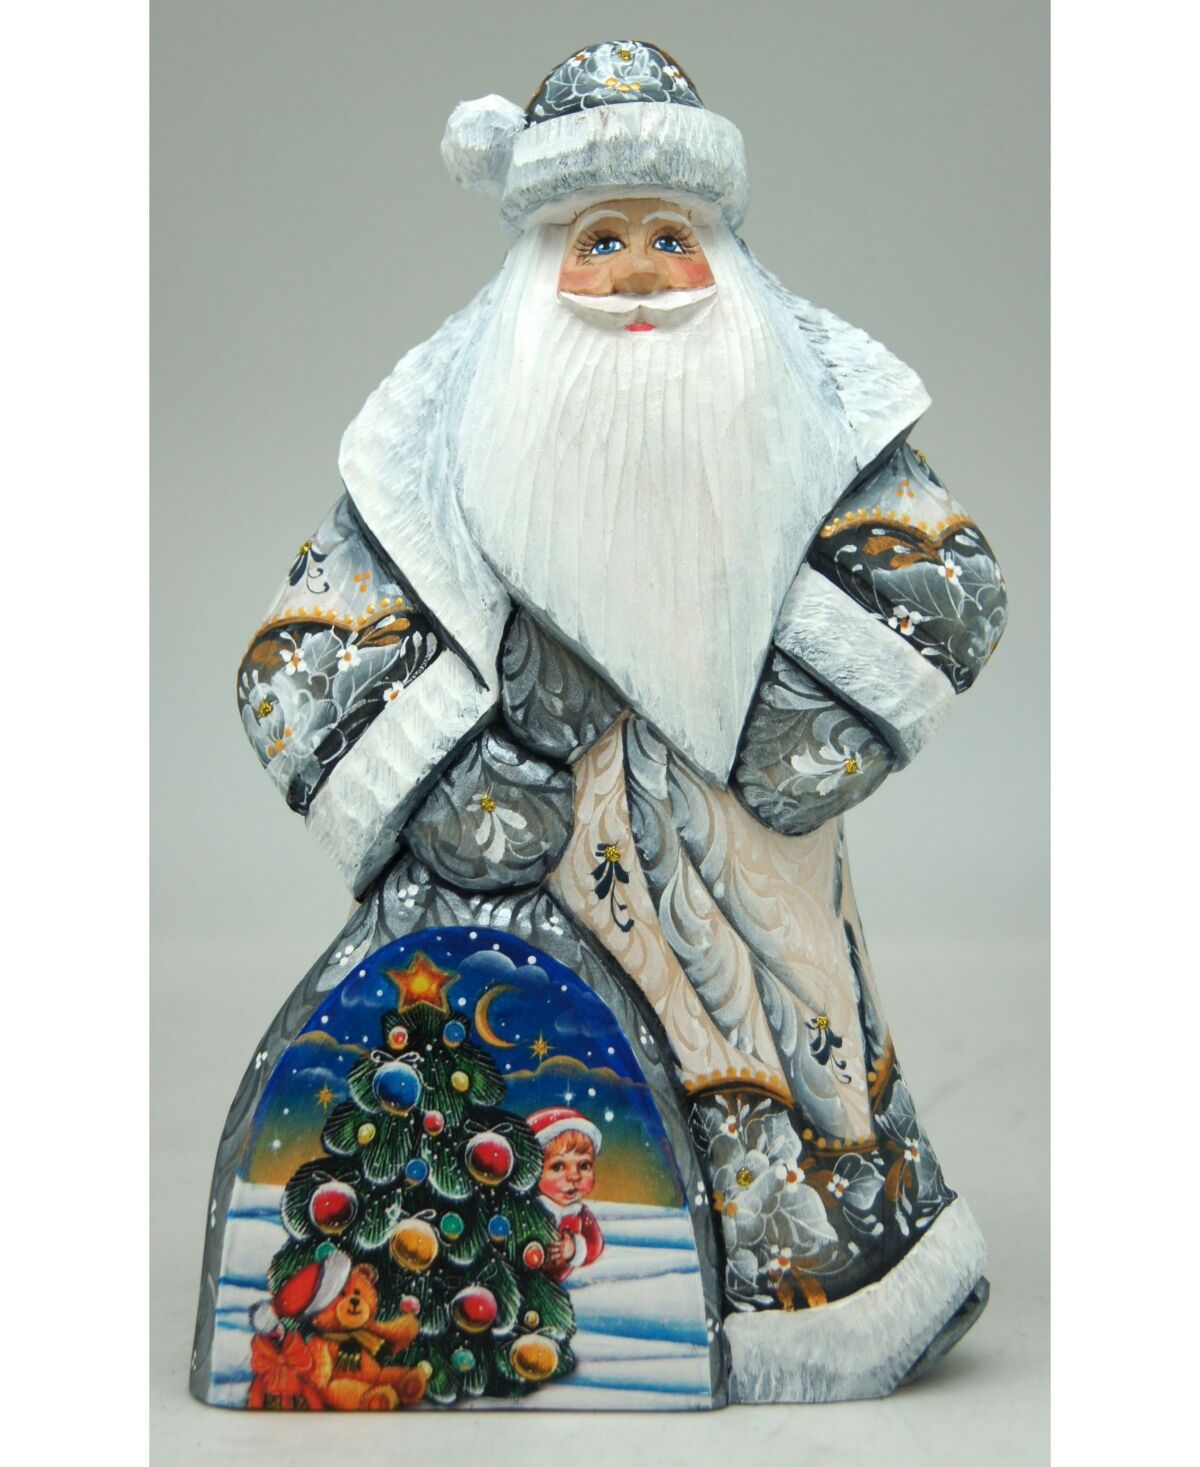 G.DeBrekht Woodcarved Hand Painted Christmas Tree Dancing Santa Figurine - Multi